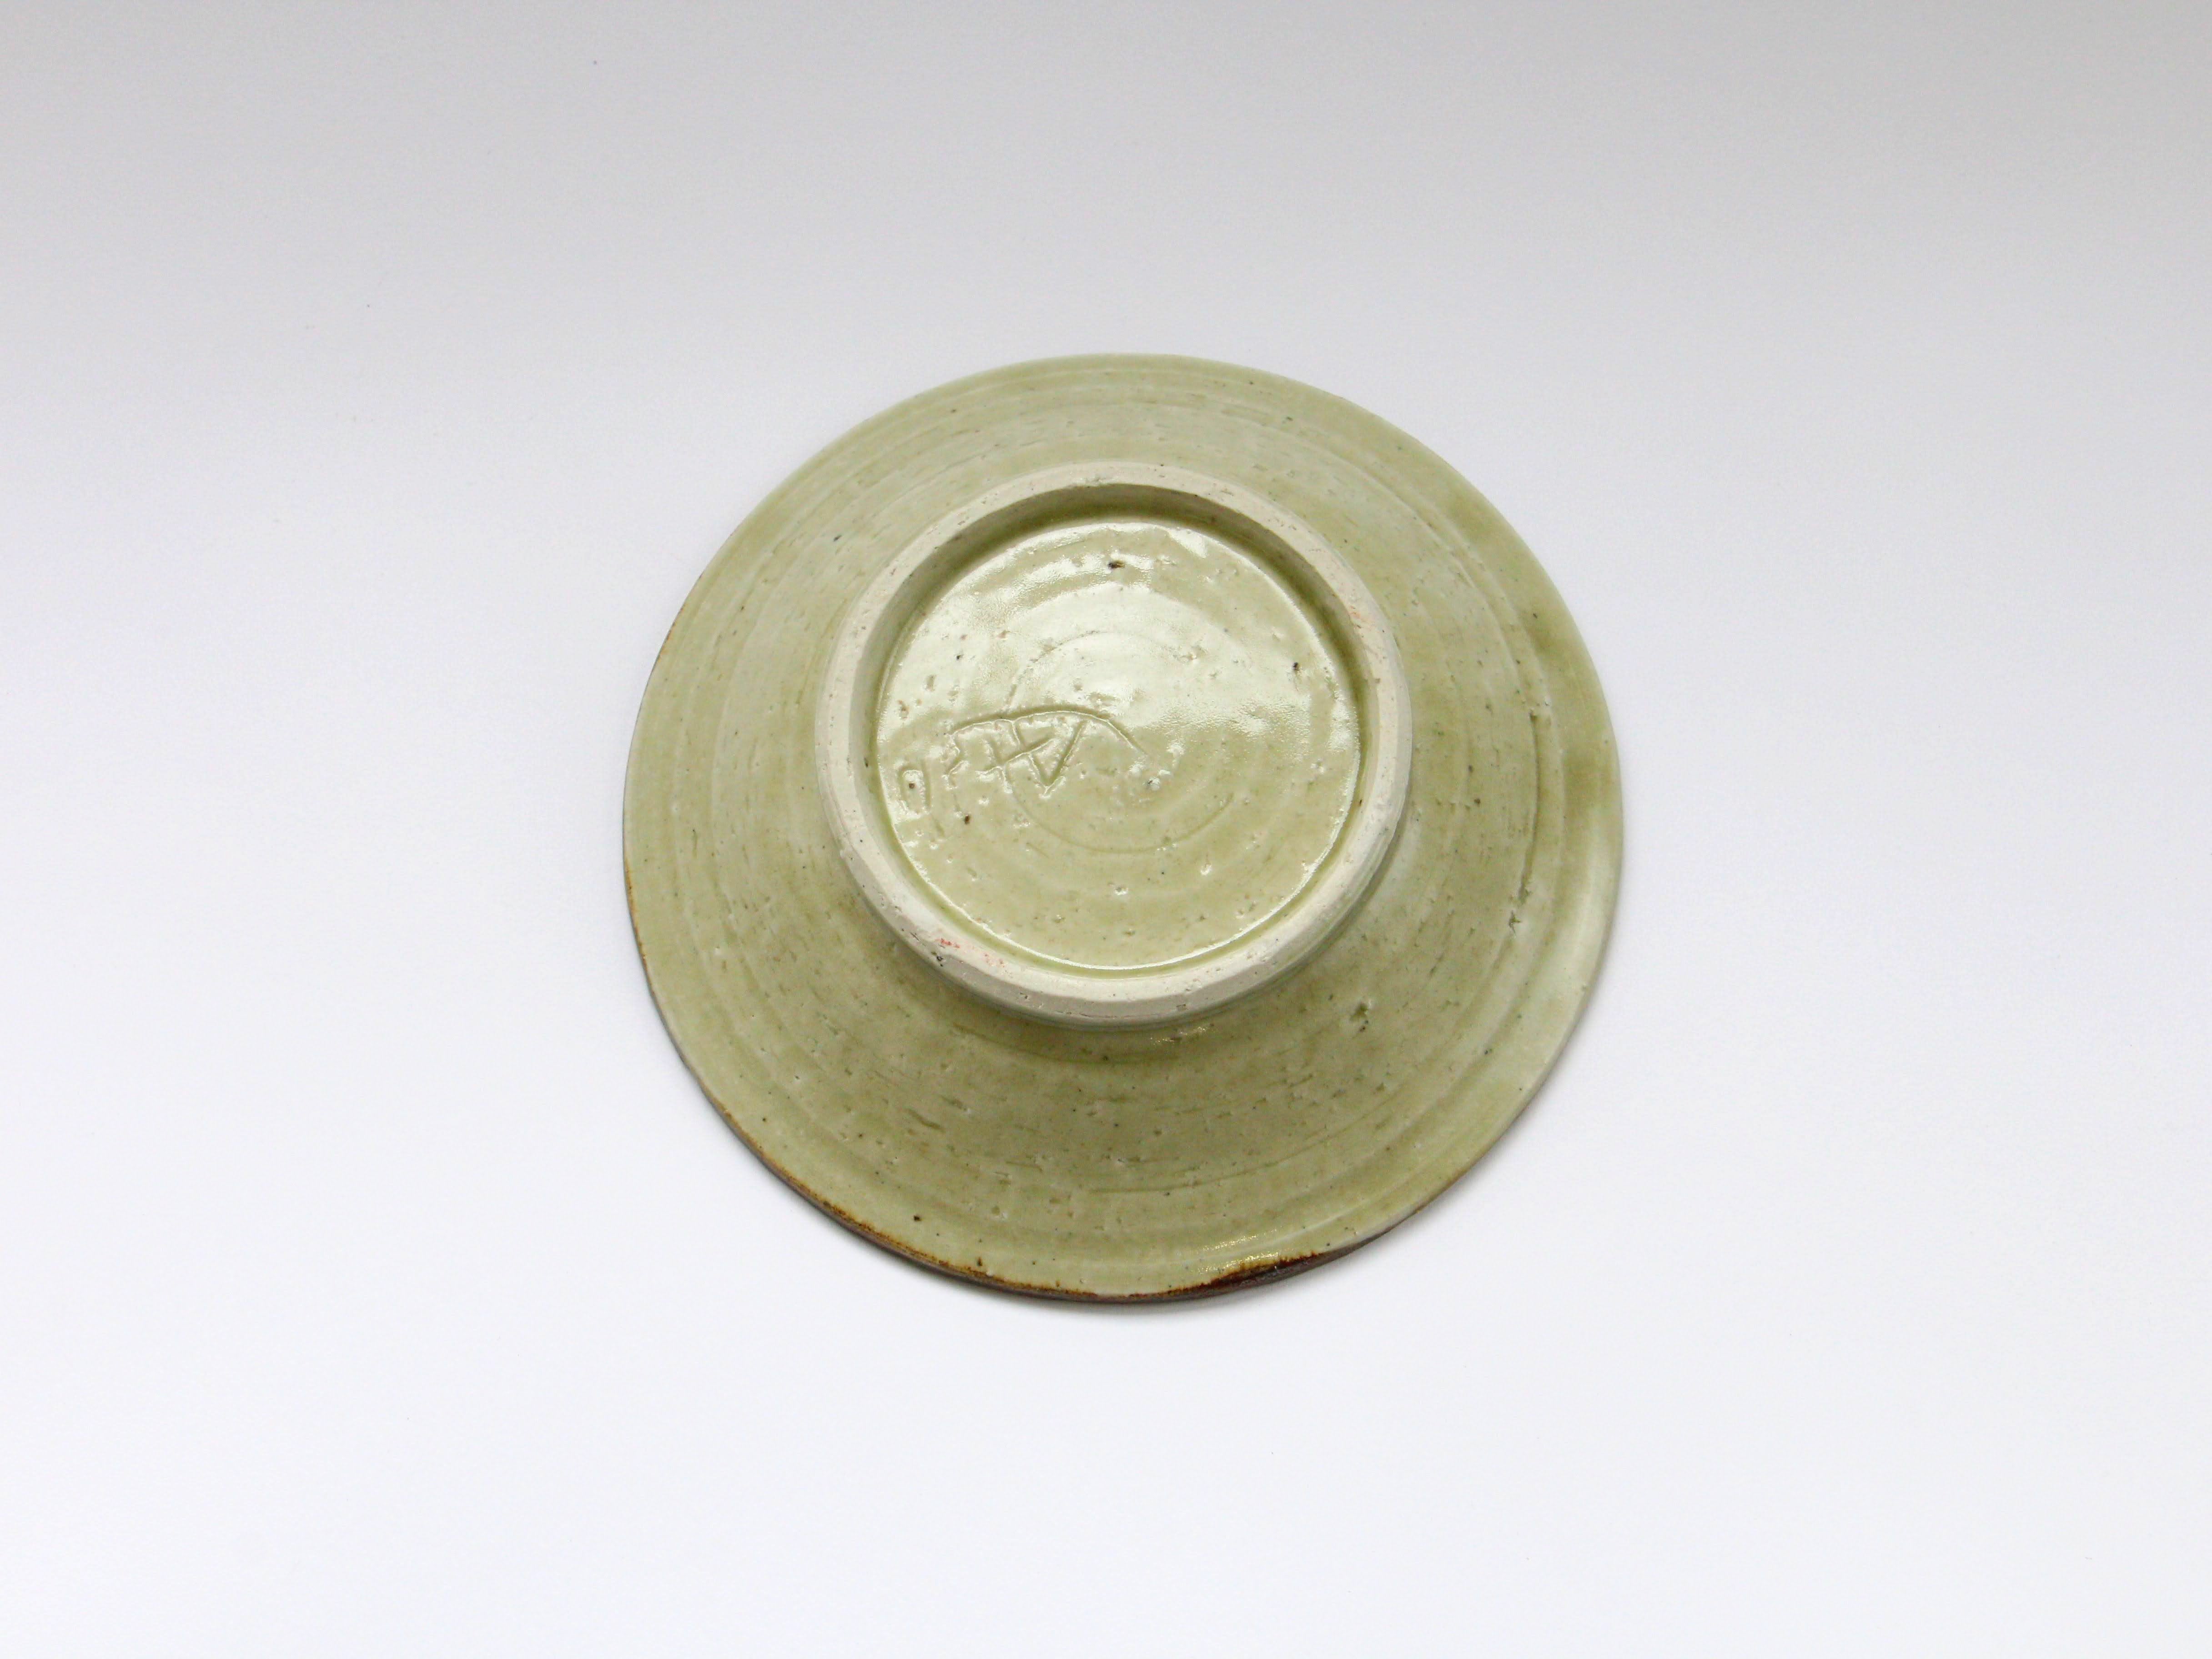 Ash glaze shinogitori bowl [Jun Kato]